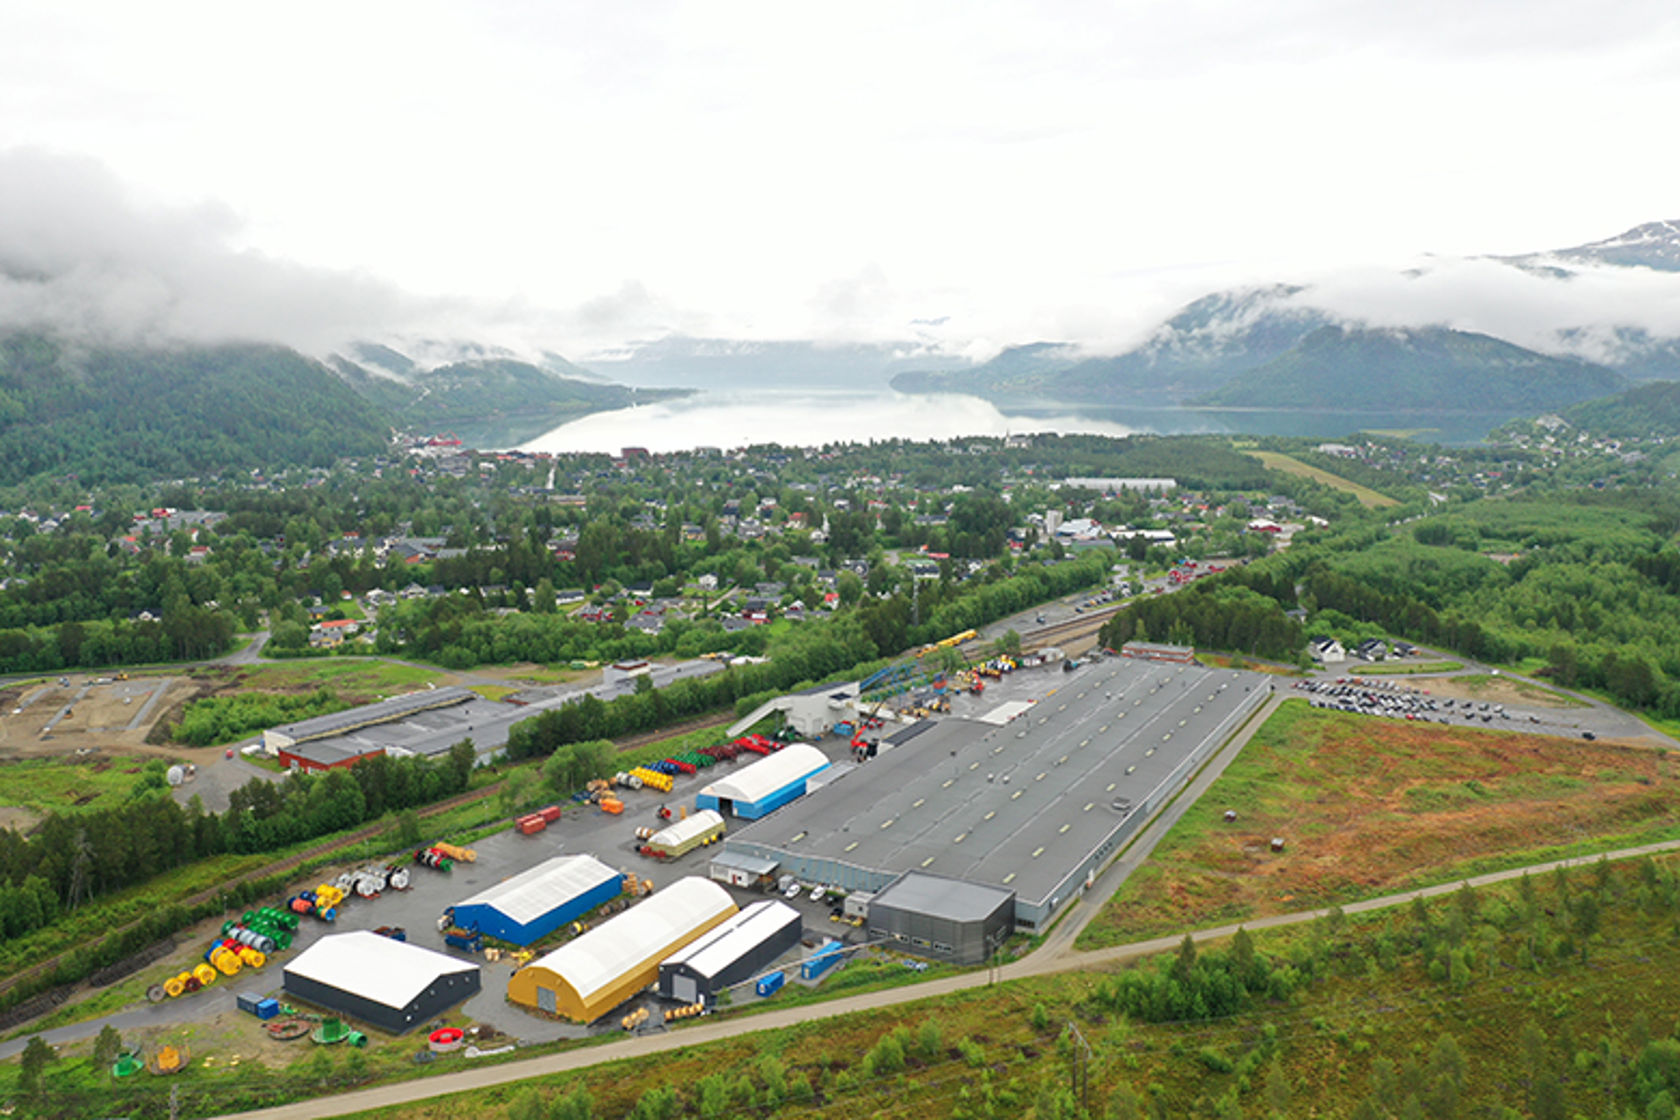 Bilde tatt ovenfra av stor bygning i et industriområde, med fjell og fjord i bakgrunn.